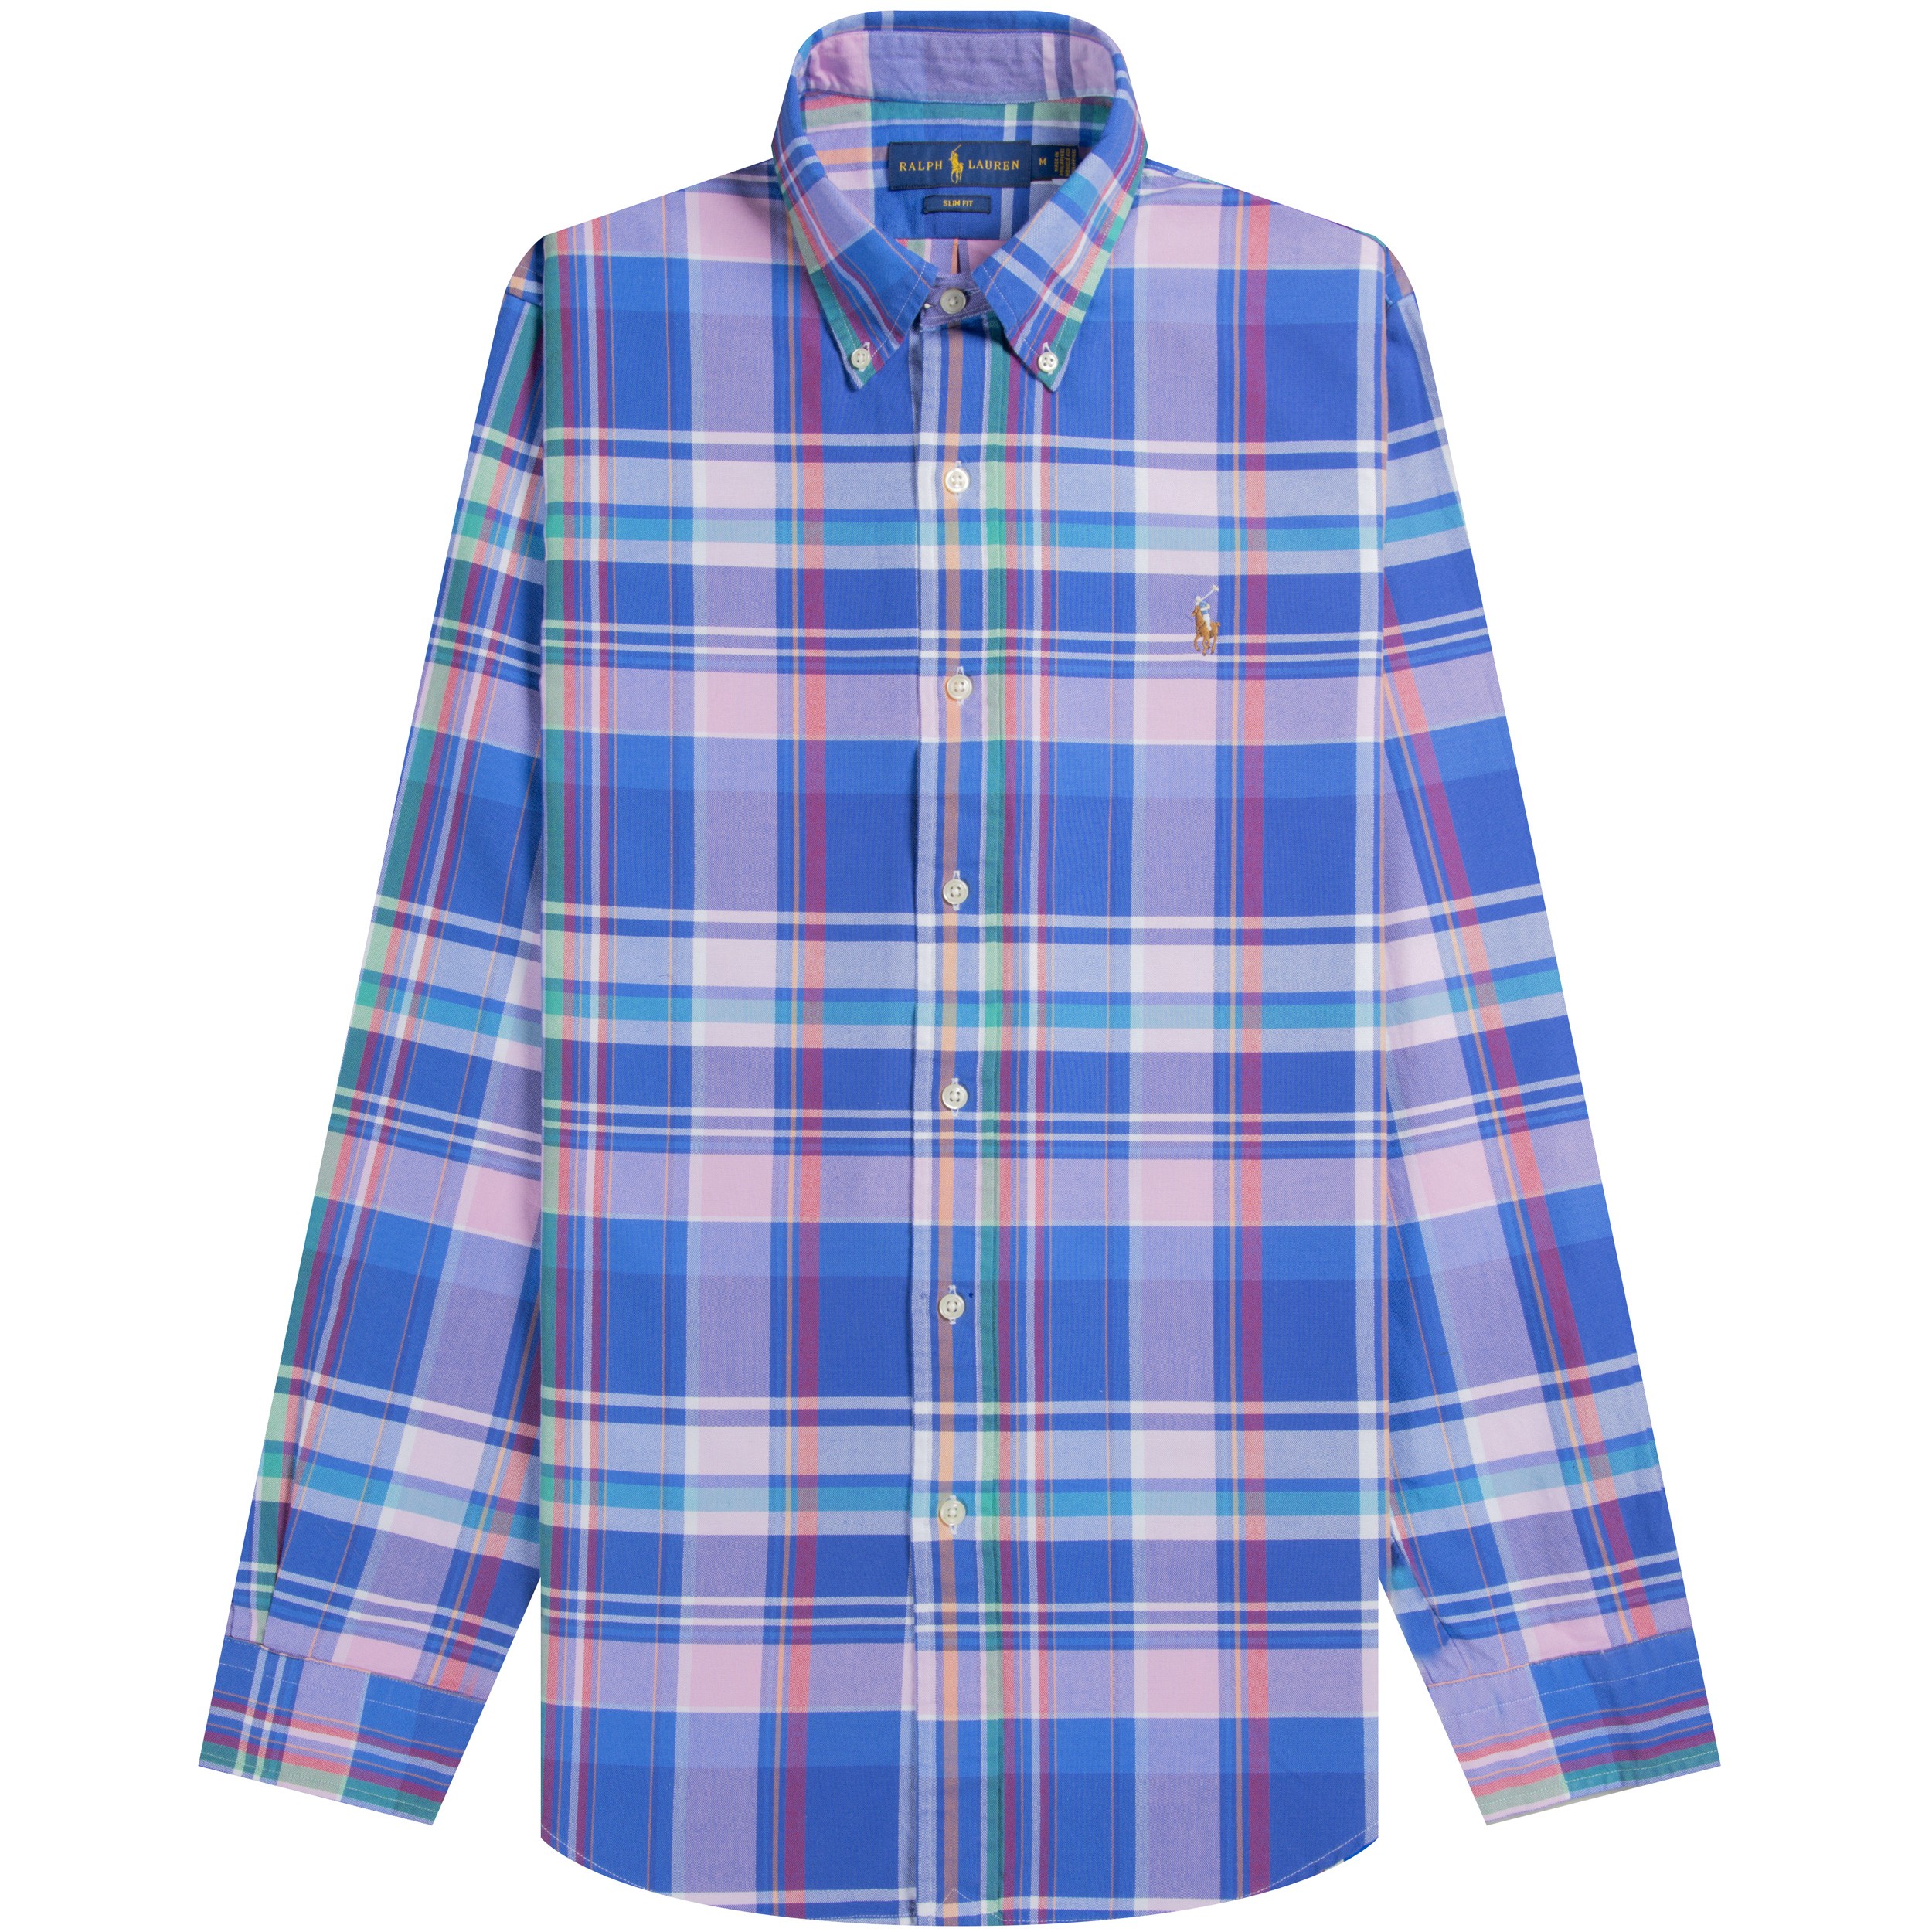 Polo Ralph Lauren Ralph Lauren 'Oxford' Check Shirt Slim Fit Pink/Blue